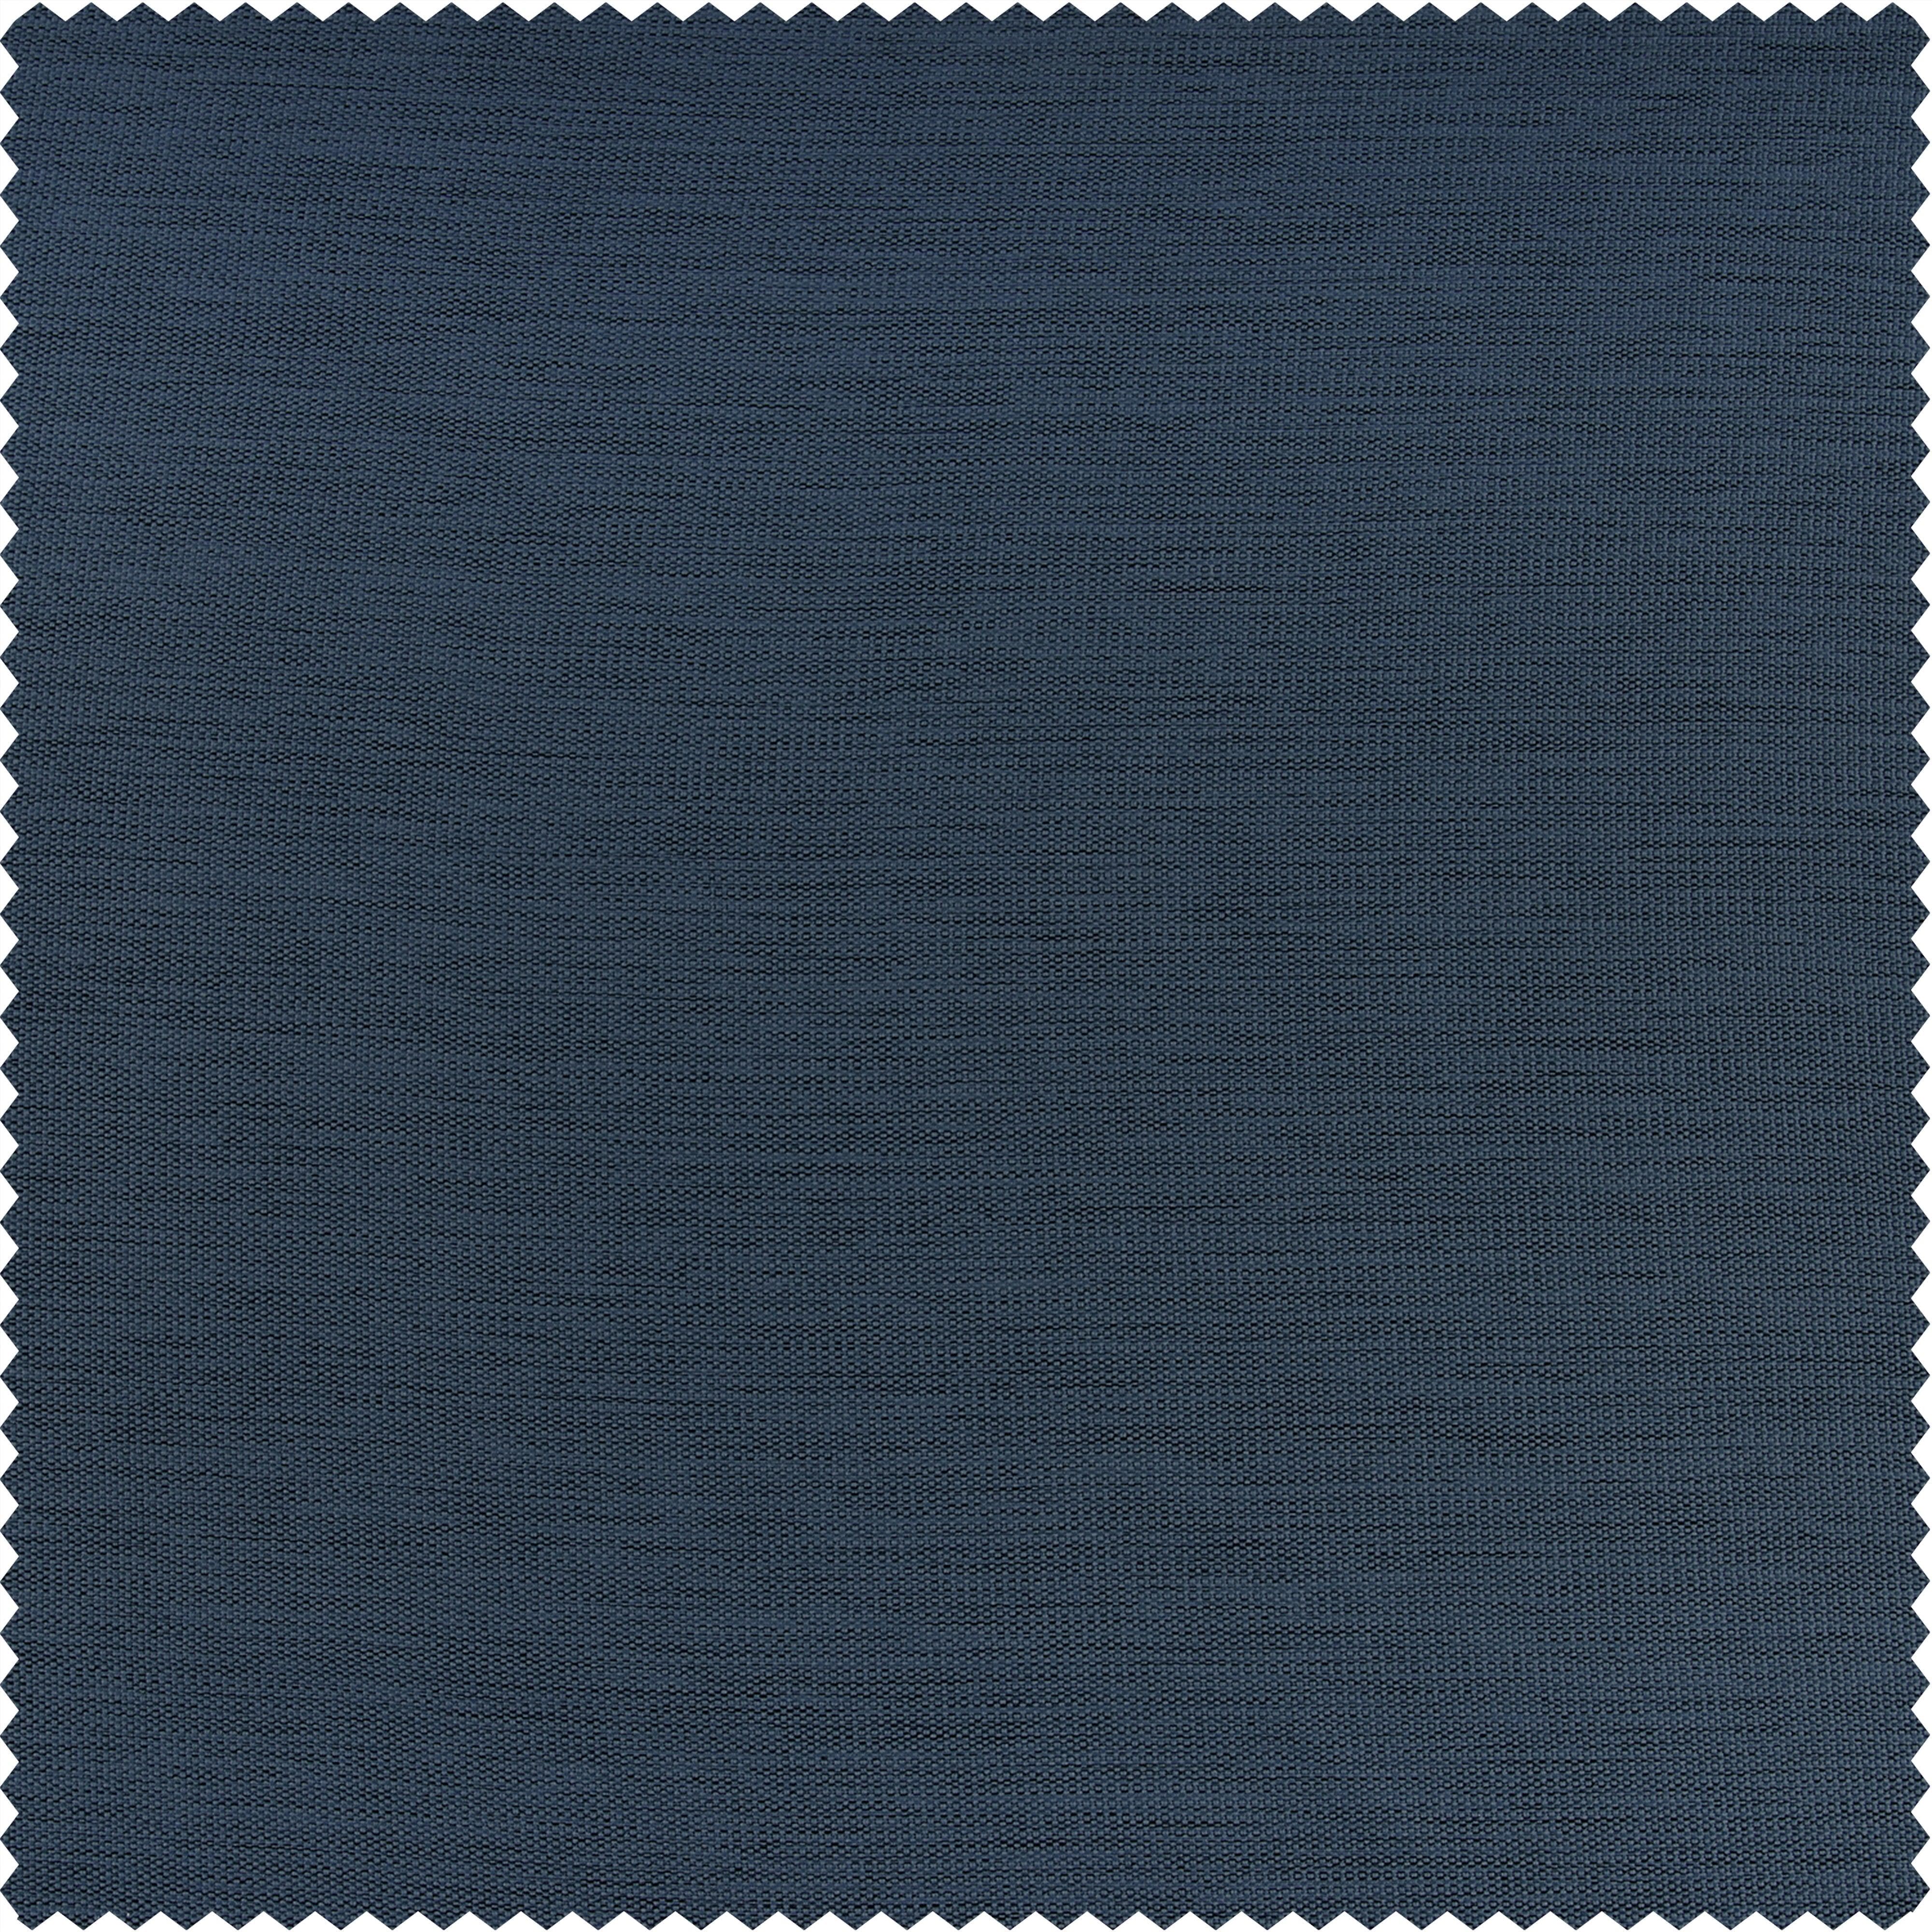 Wild Blue Textured Bellino Room Darkening Curtain